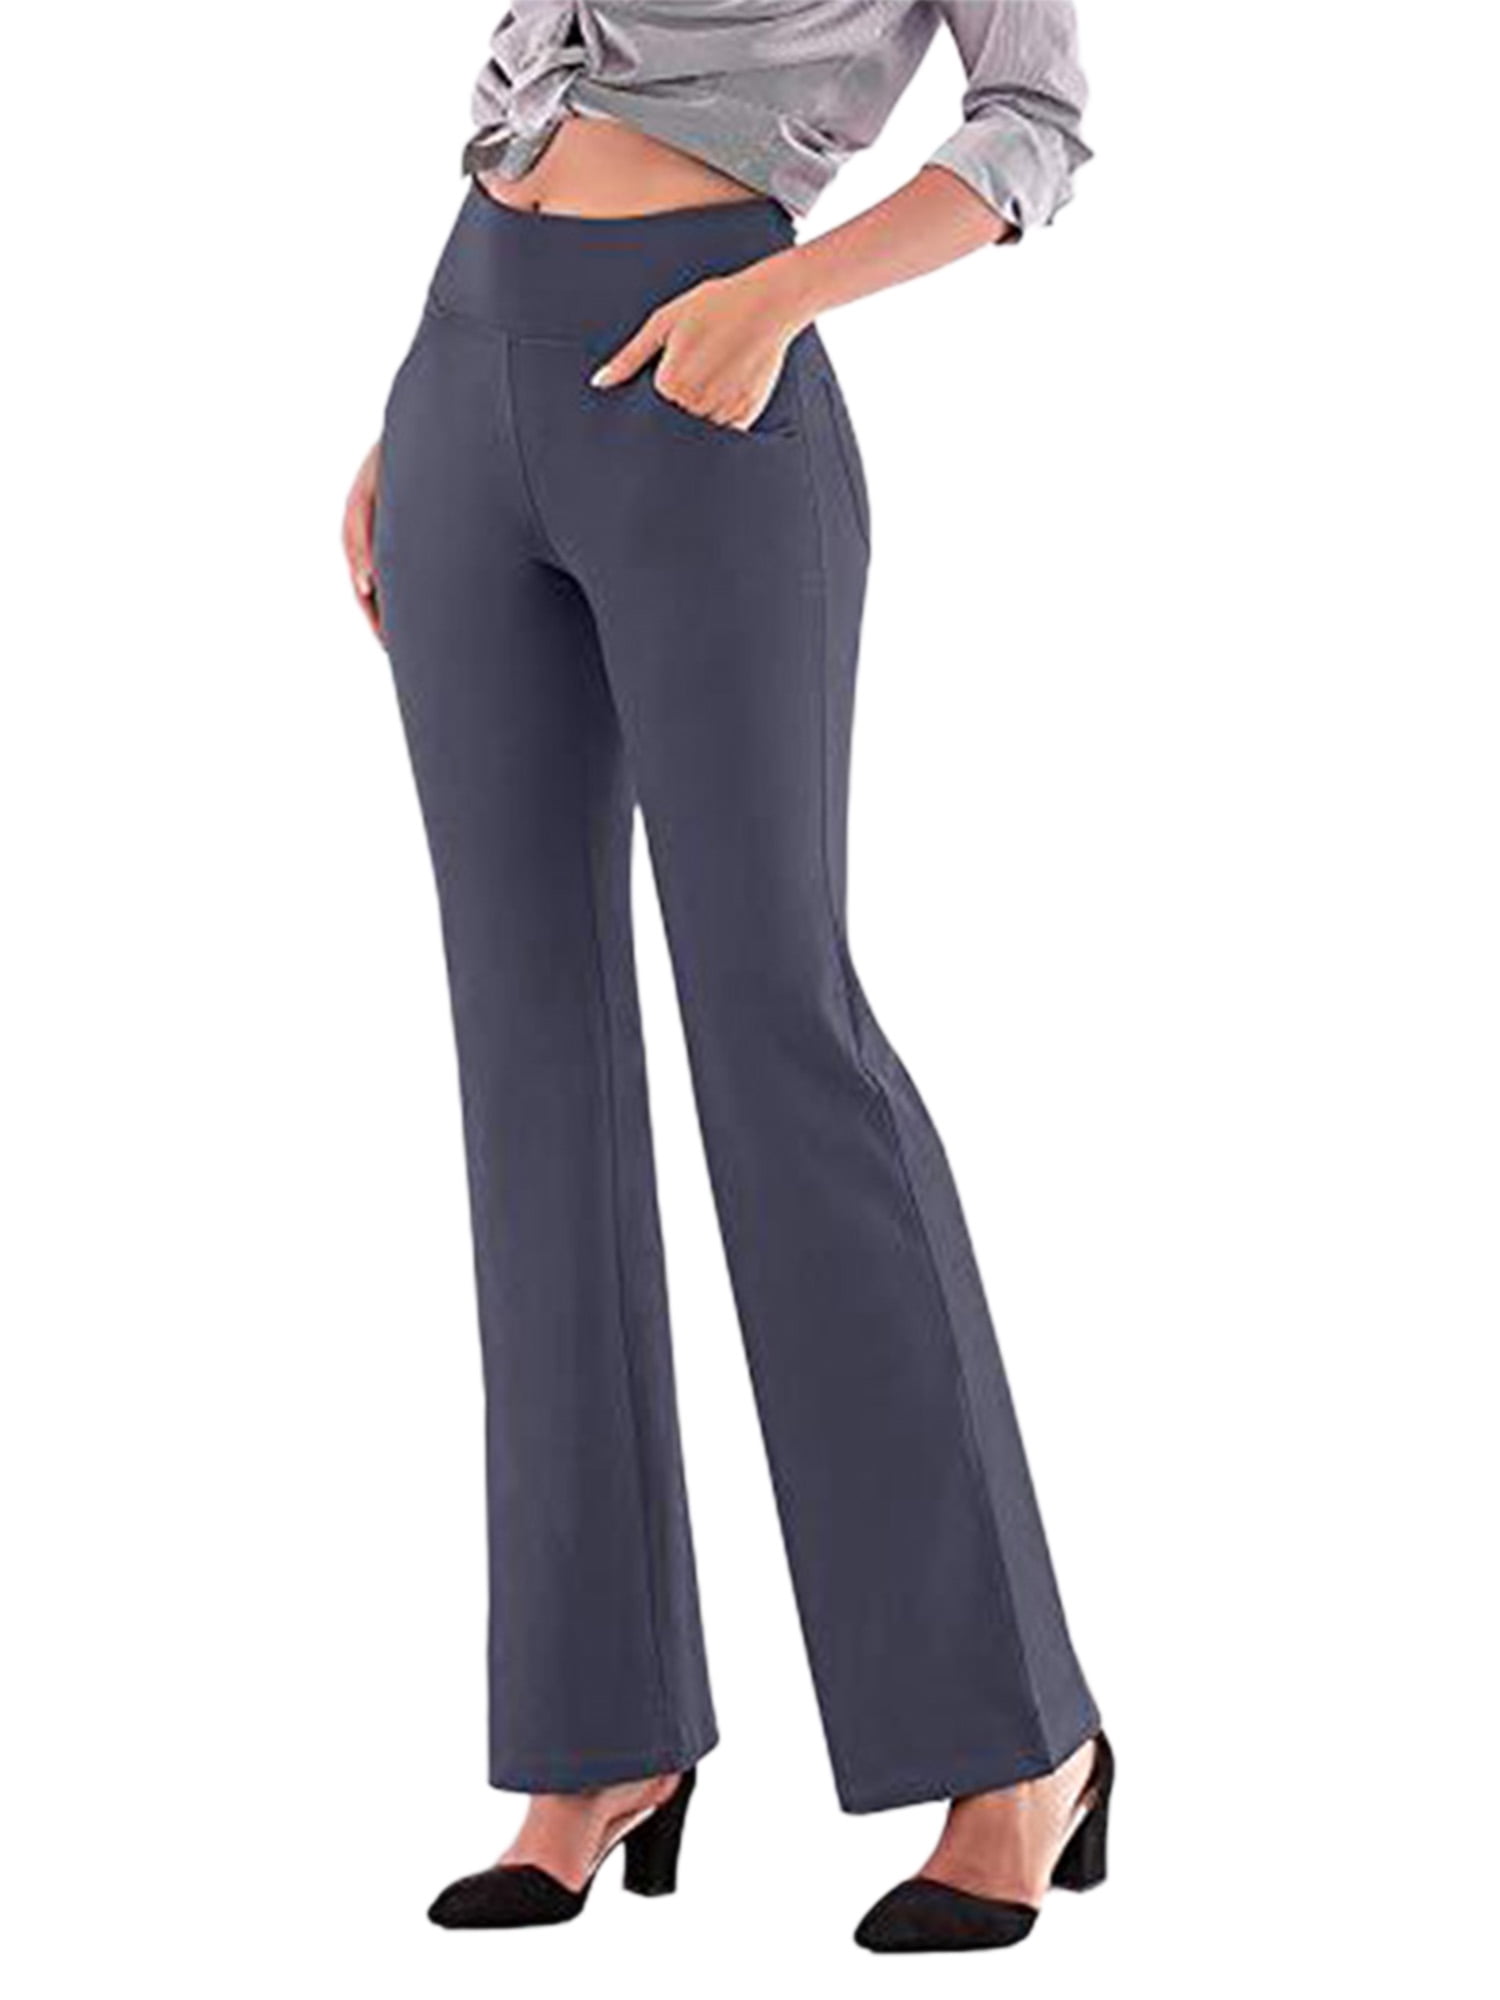 Proper Cloth Dress Pants: Types of Fit - Proper Cloth Help